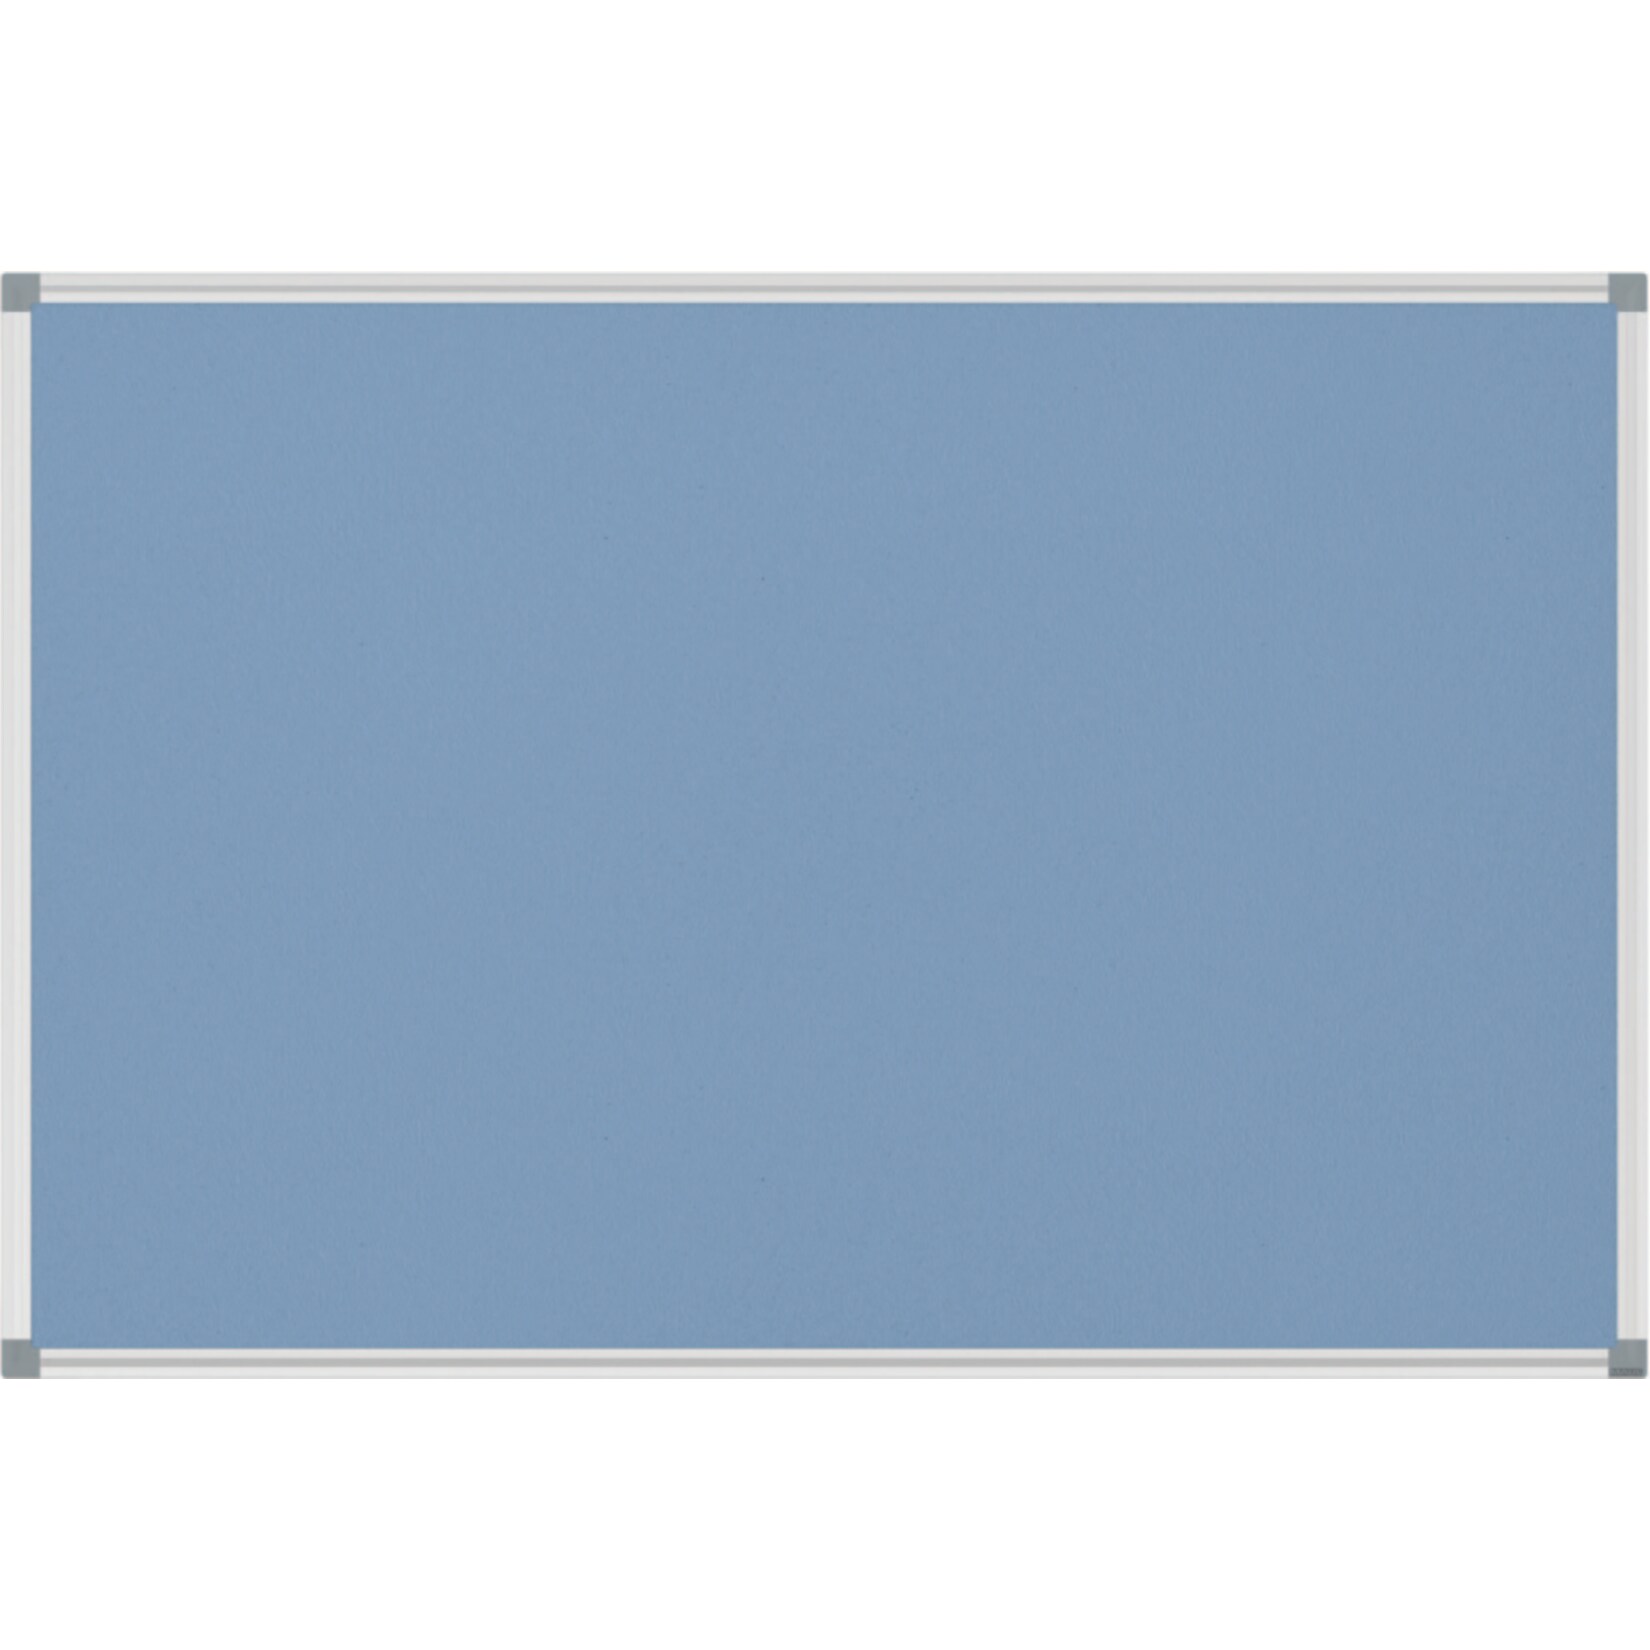 MAUL Pinnboard MAULstandard Textil, 90 x 180 cm  - hellblau